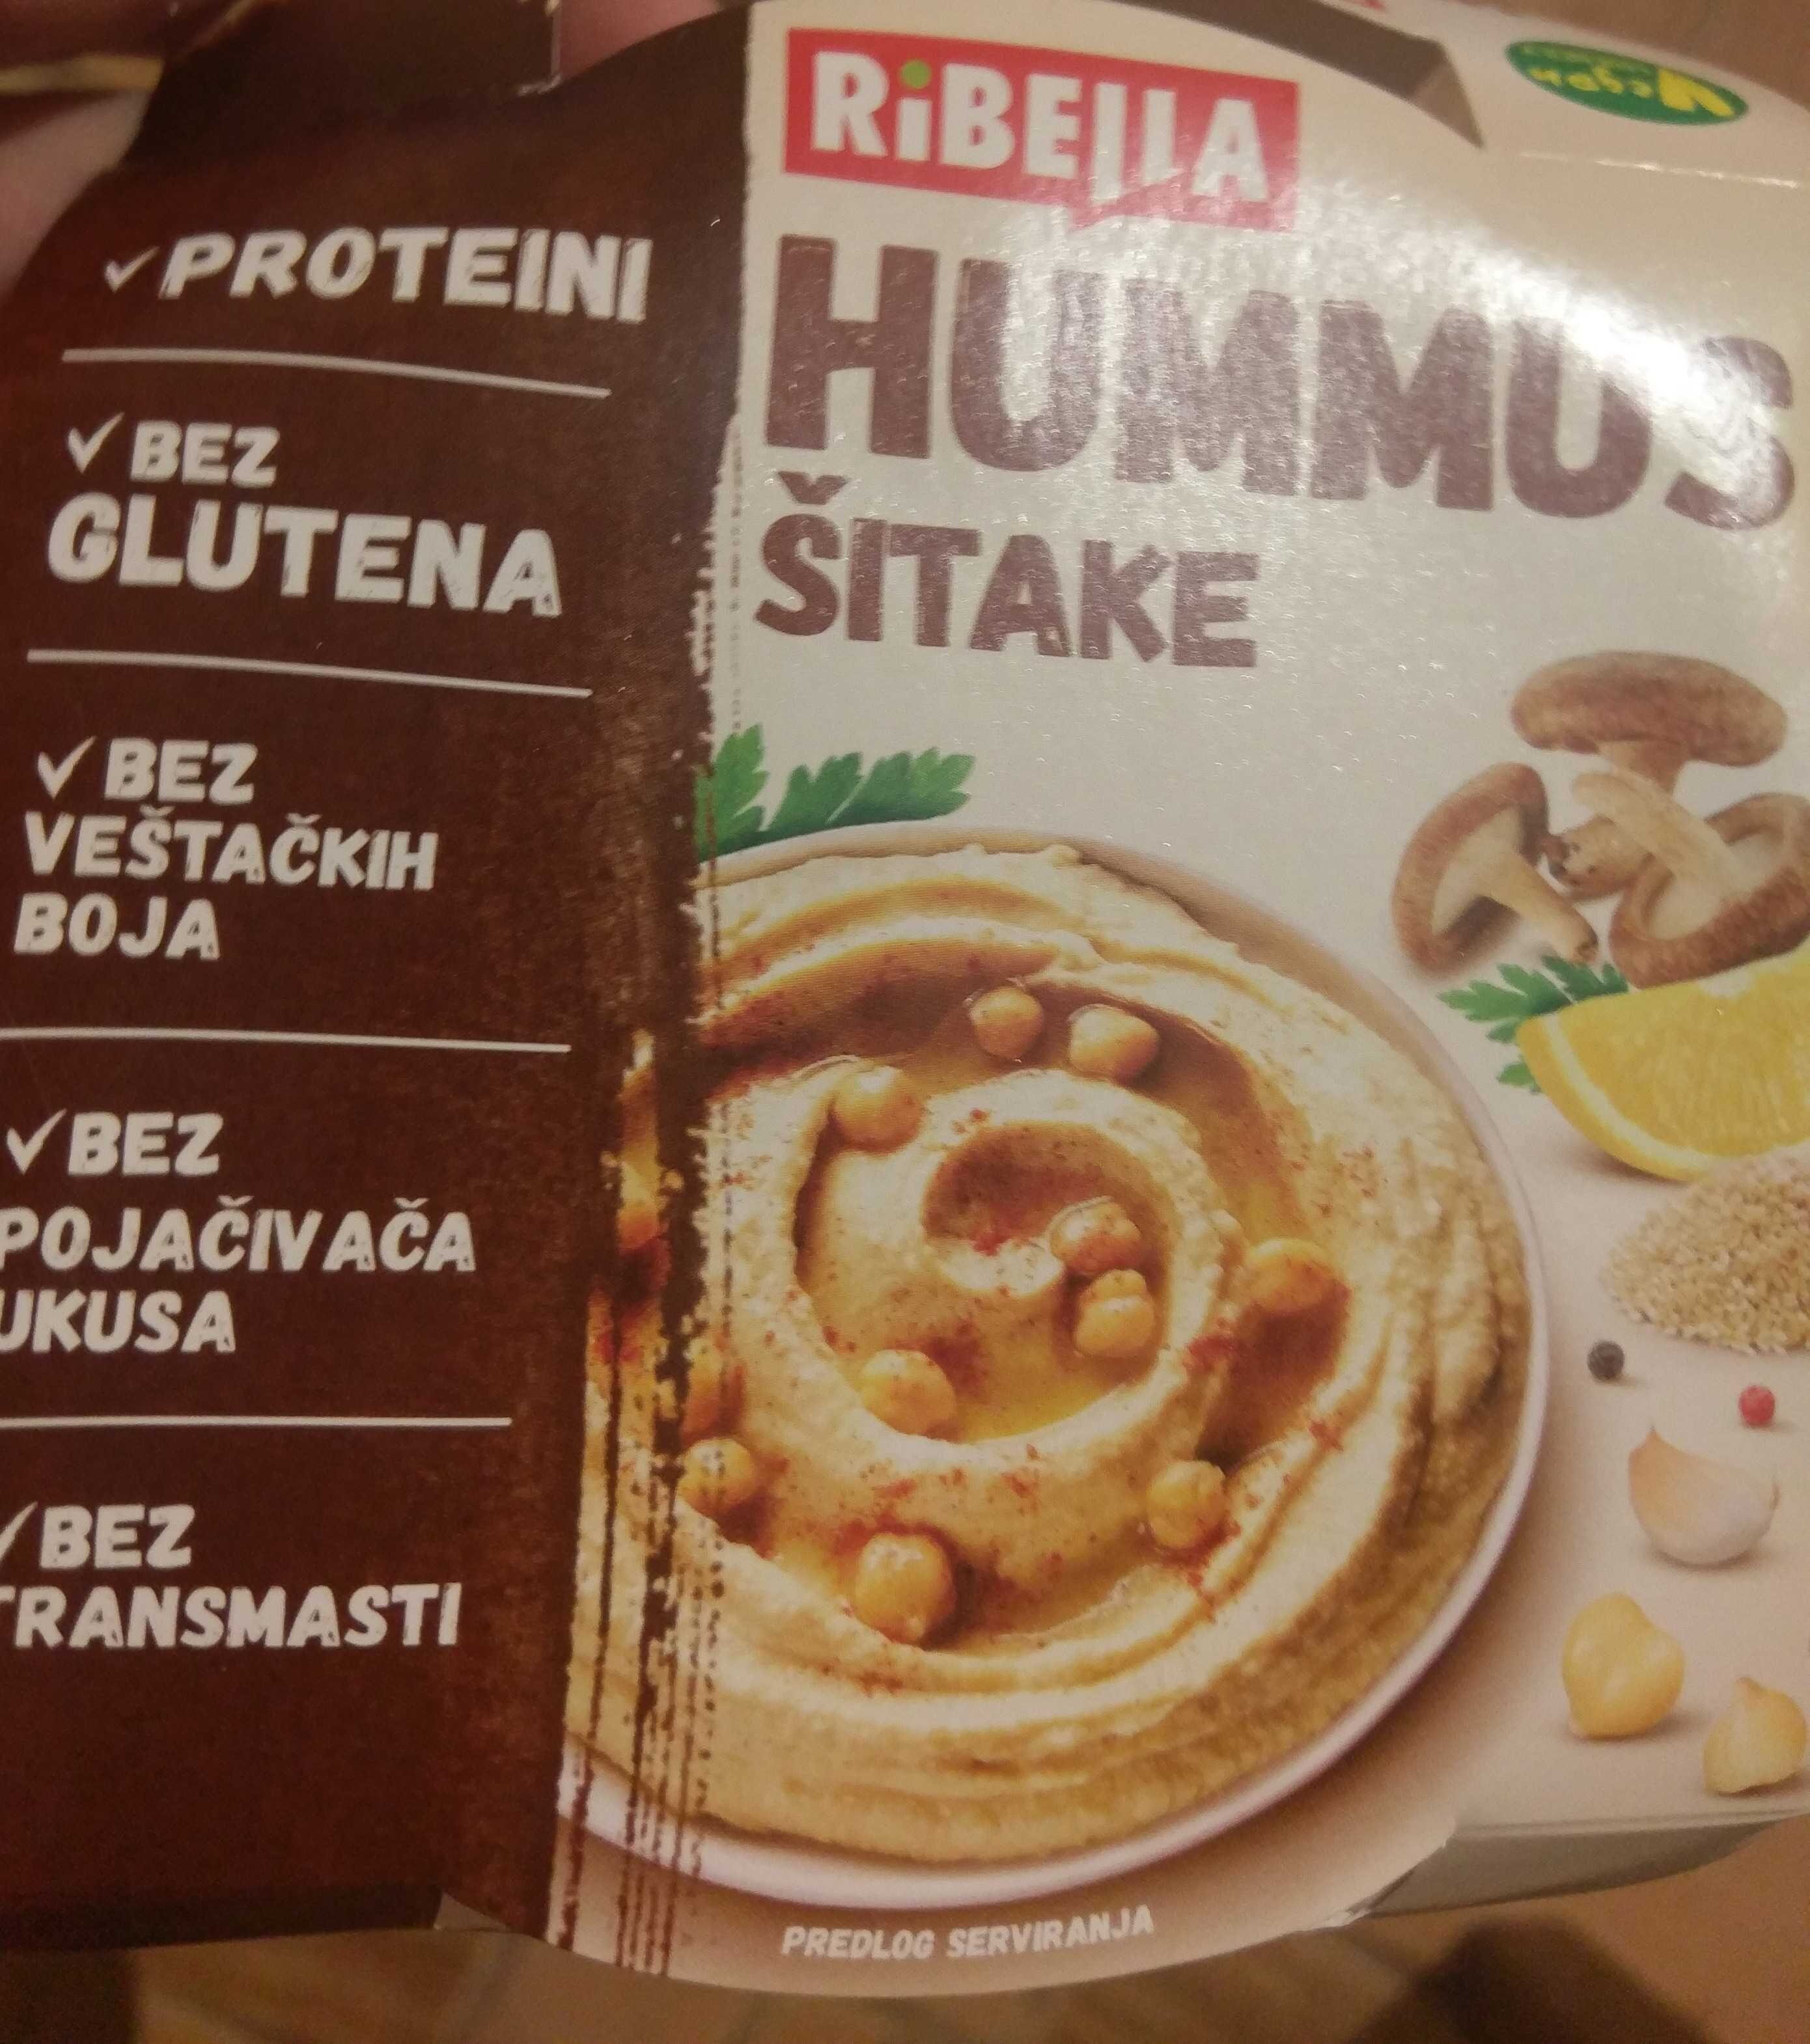 Хумус шитаке - Product